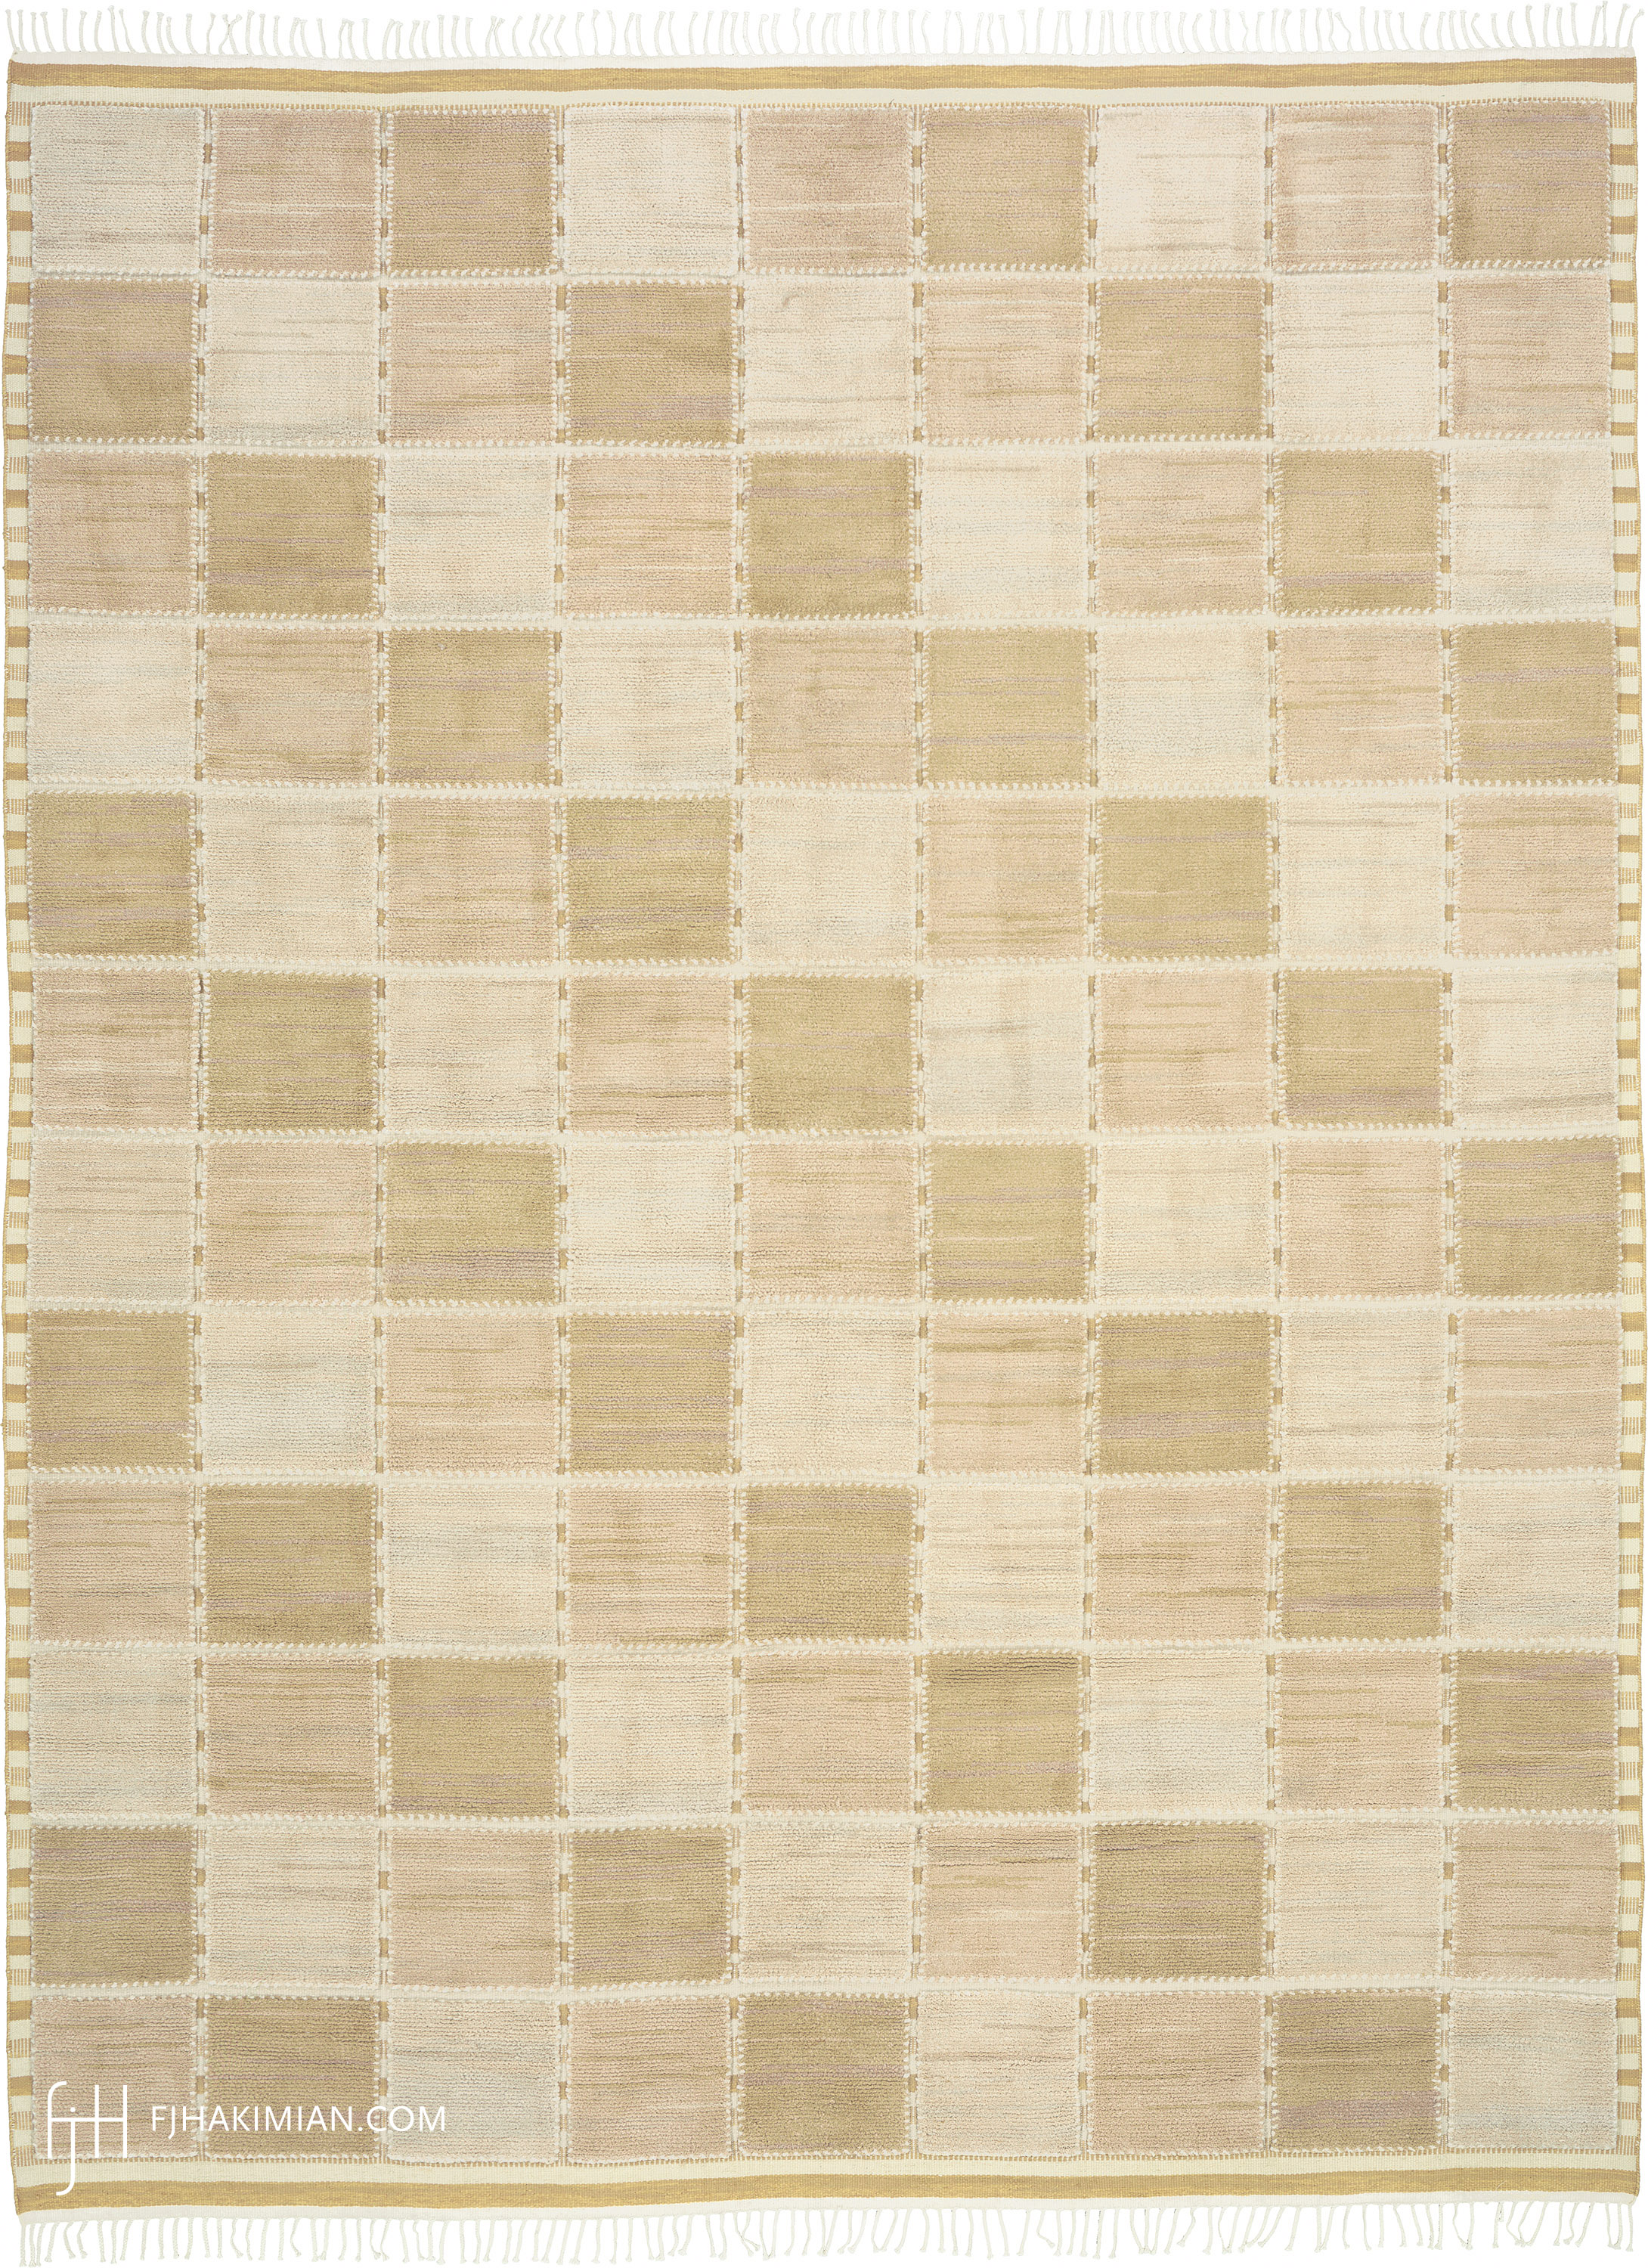 16238 Sandstone Design | Custom Swedish Inspired Carpet | FJ Hakimian | Carpet Gallery in NY